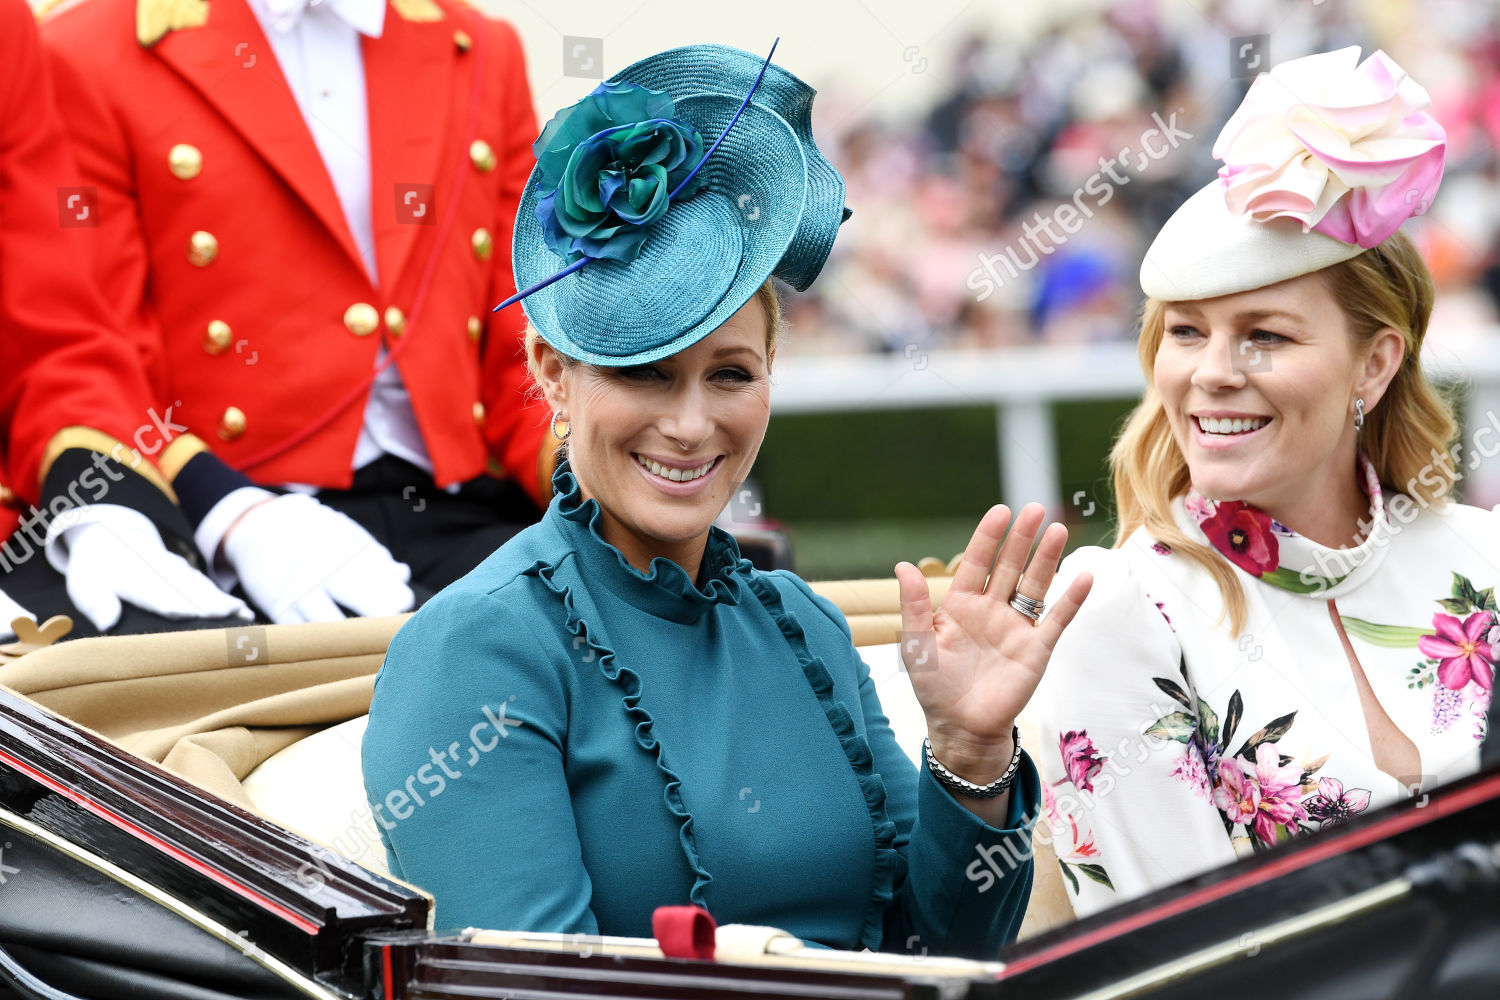 royal-ascot-ladies-day-uk-20-jun-2019-shutterstock-editorial-10317166dj.jpg